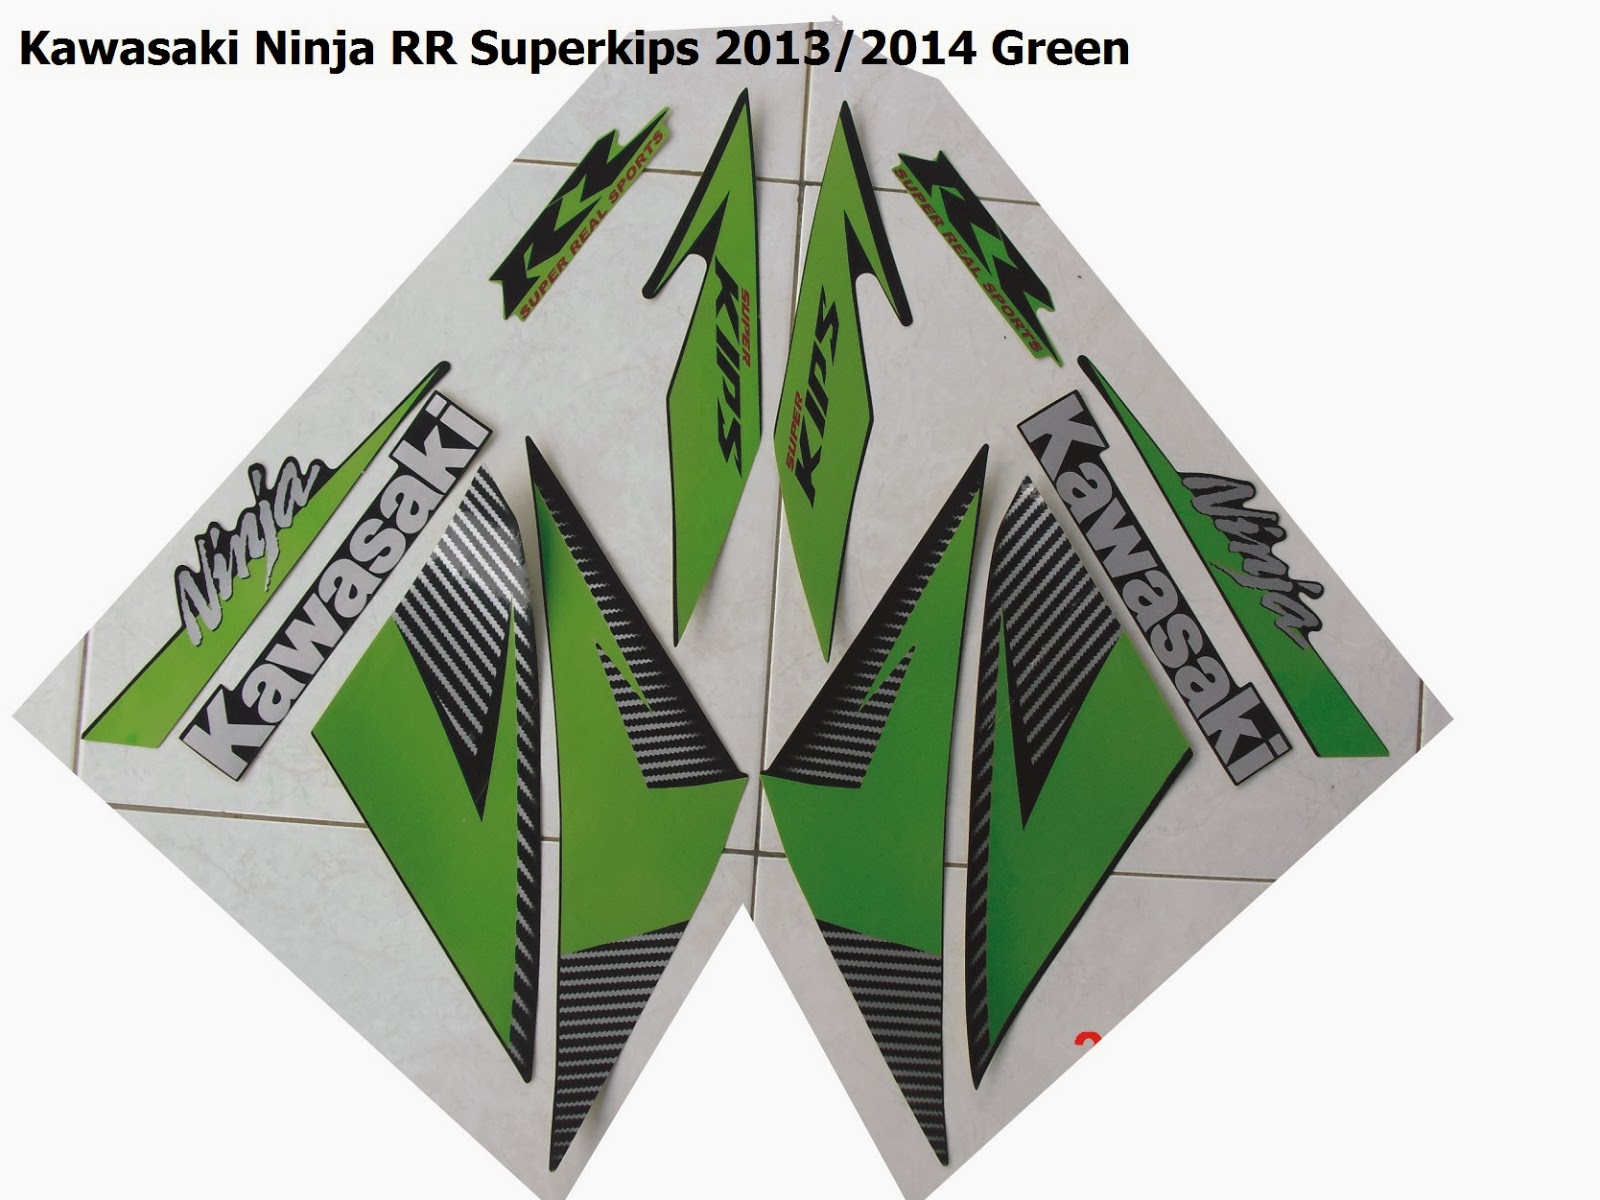 JUAL STRIPING MOTOR KAWASAKI NINJA RR SUPERKIPS 2013 2014 JUAL